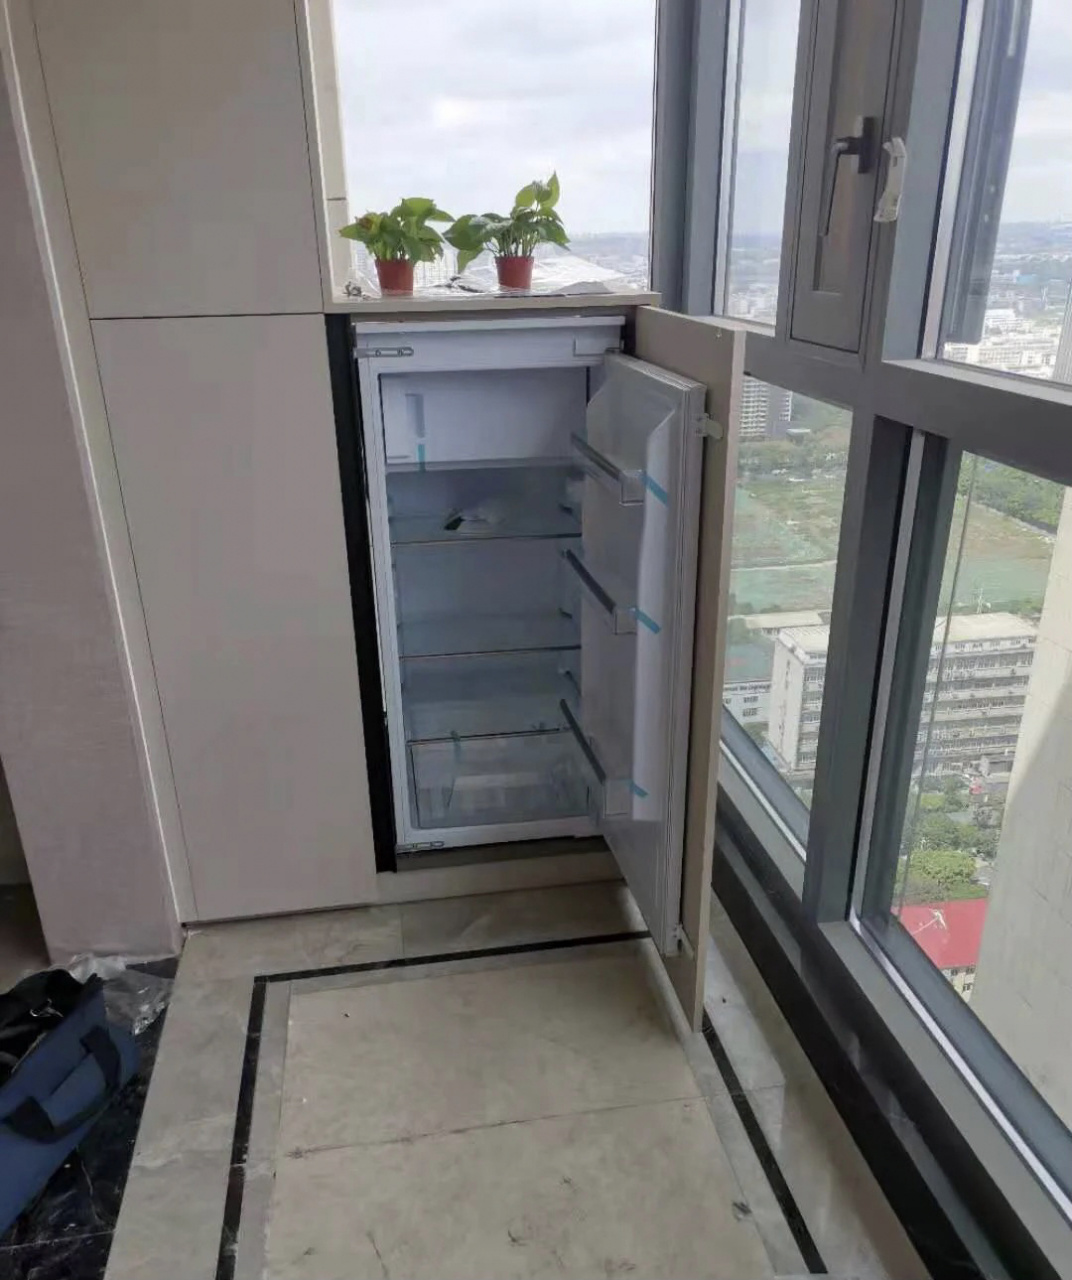 冰箱放在北阳台效果图图片